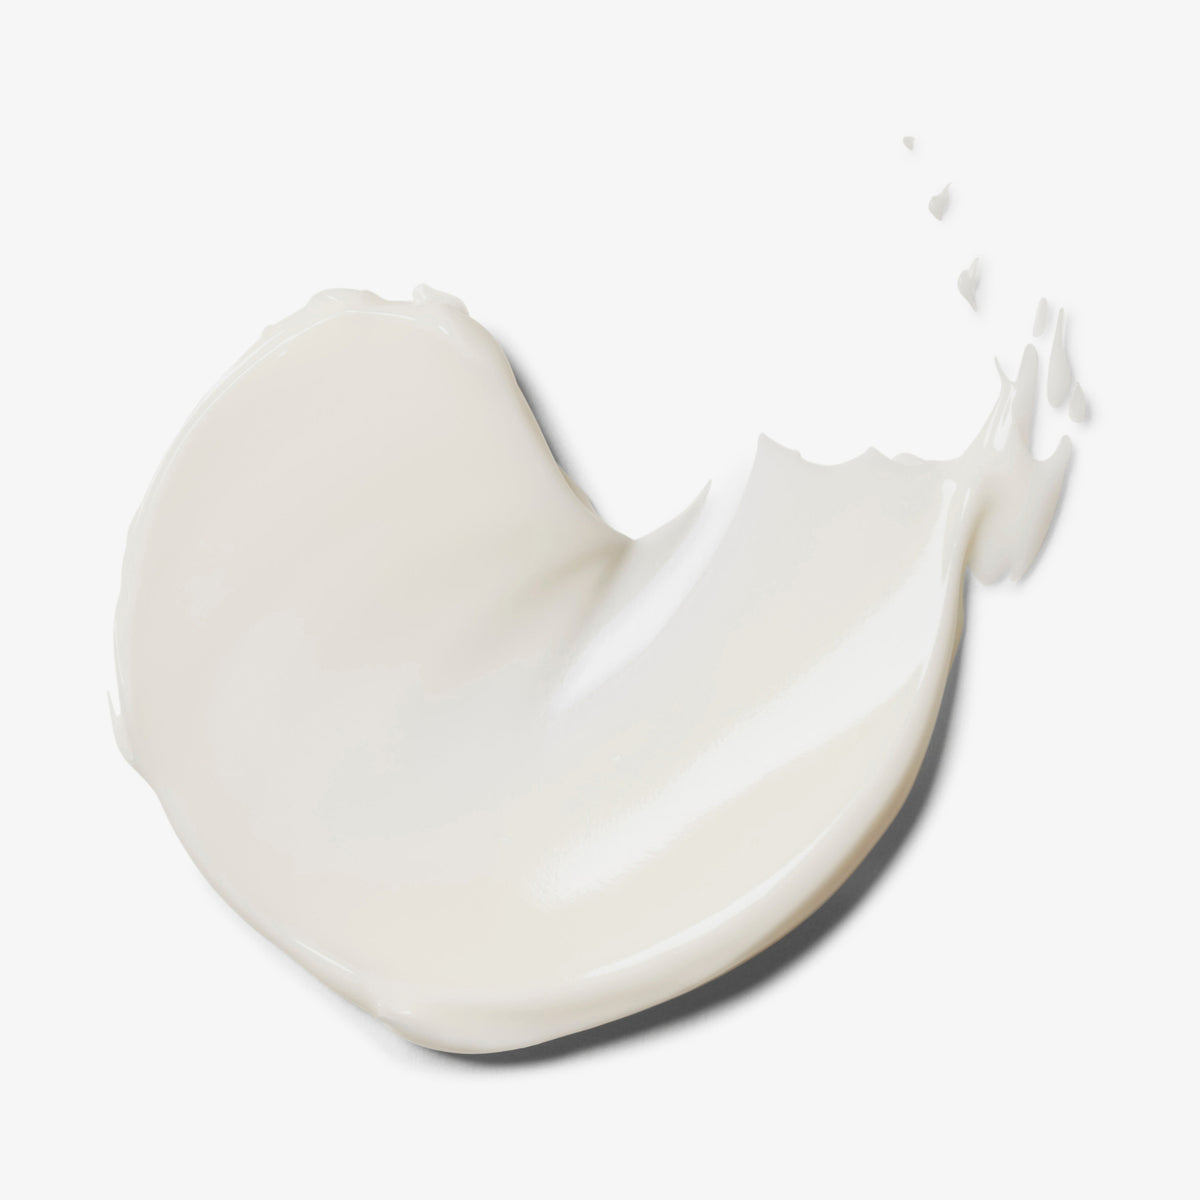 KORRES | Greek Yoghurt Beruhigende probiotische Nachtcreme